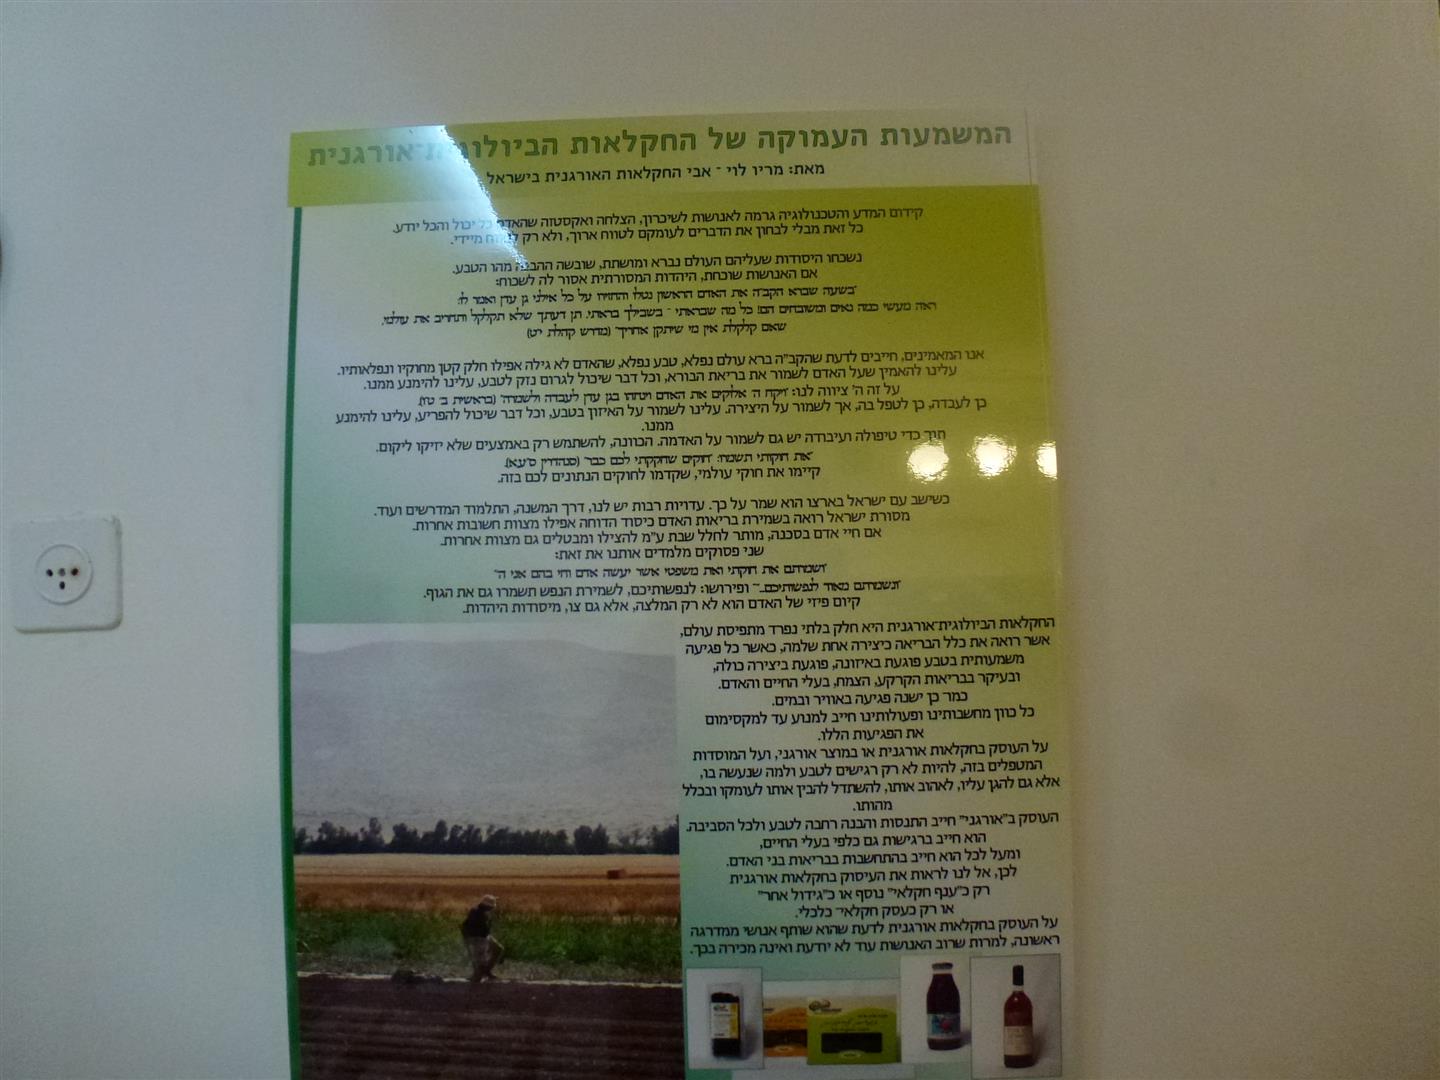 שלט המסביר את המשמעות העמוקה של החקלאות האורגנית